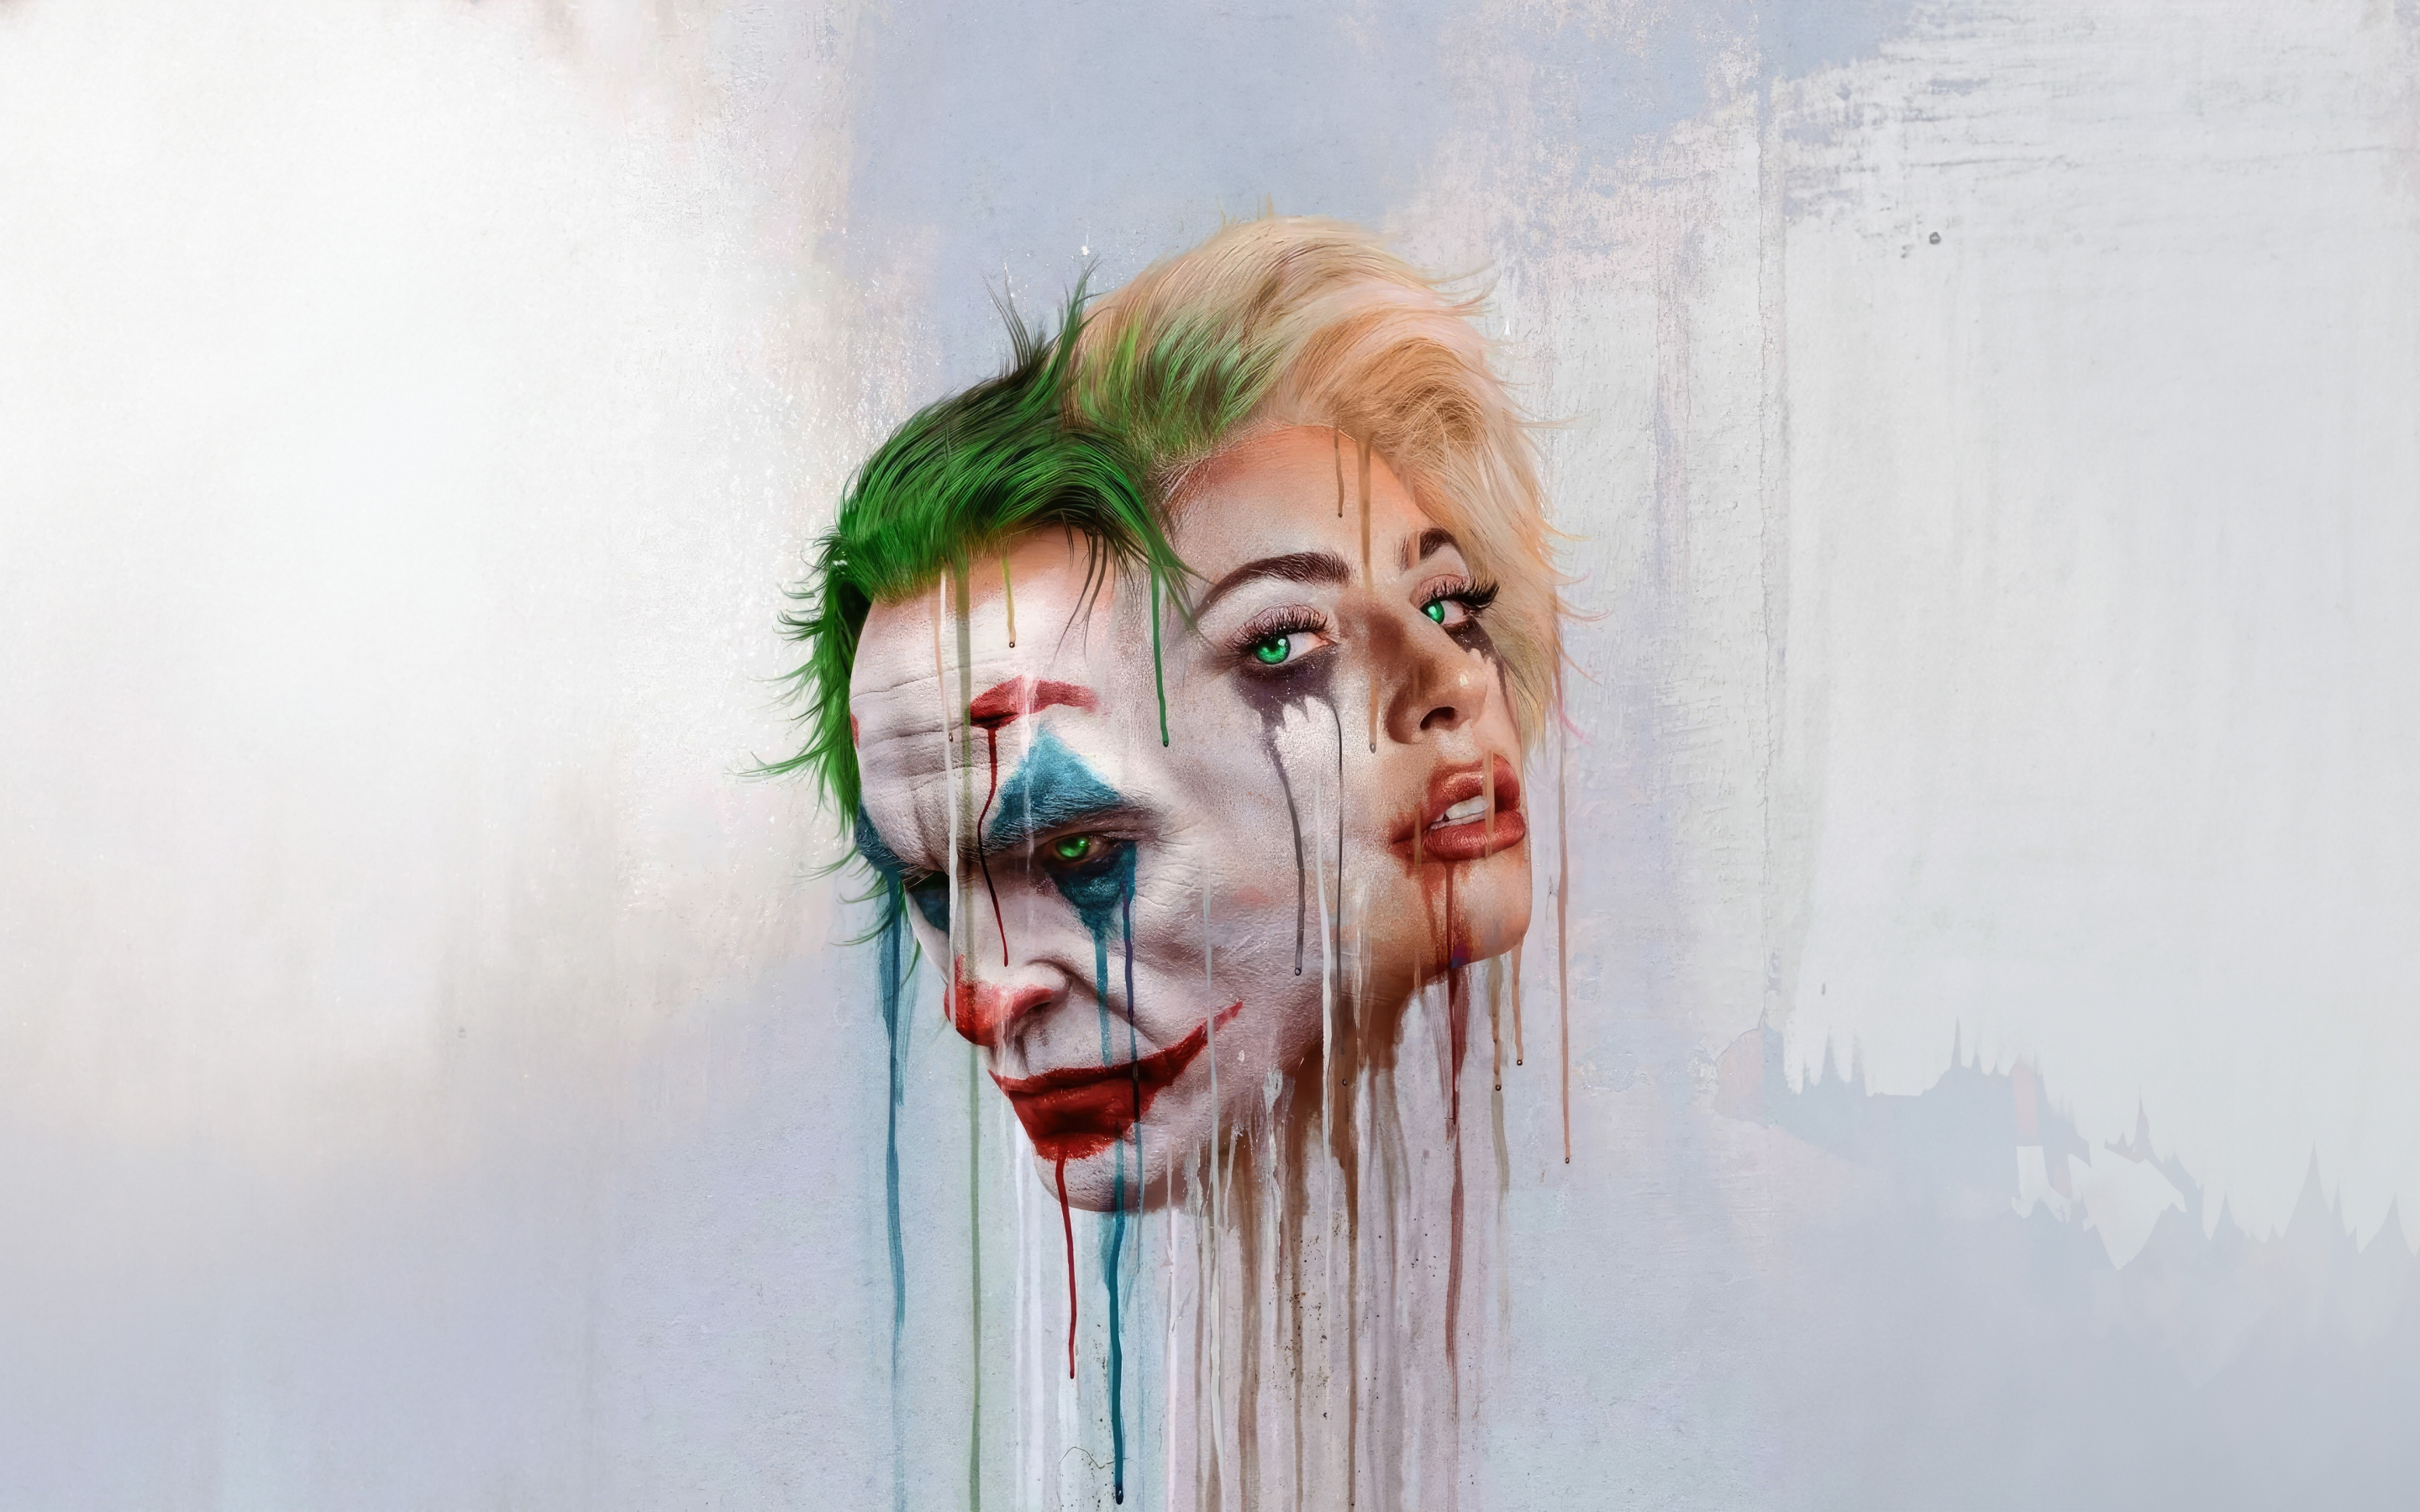 Joker's folie a deux, artwork, 2880x1800 wallpaper